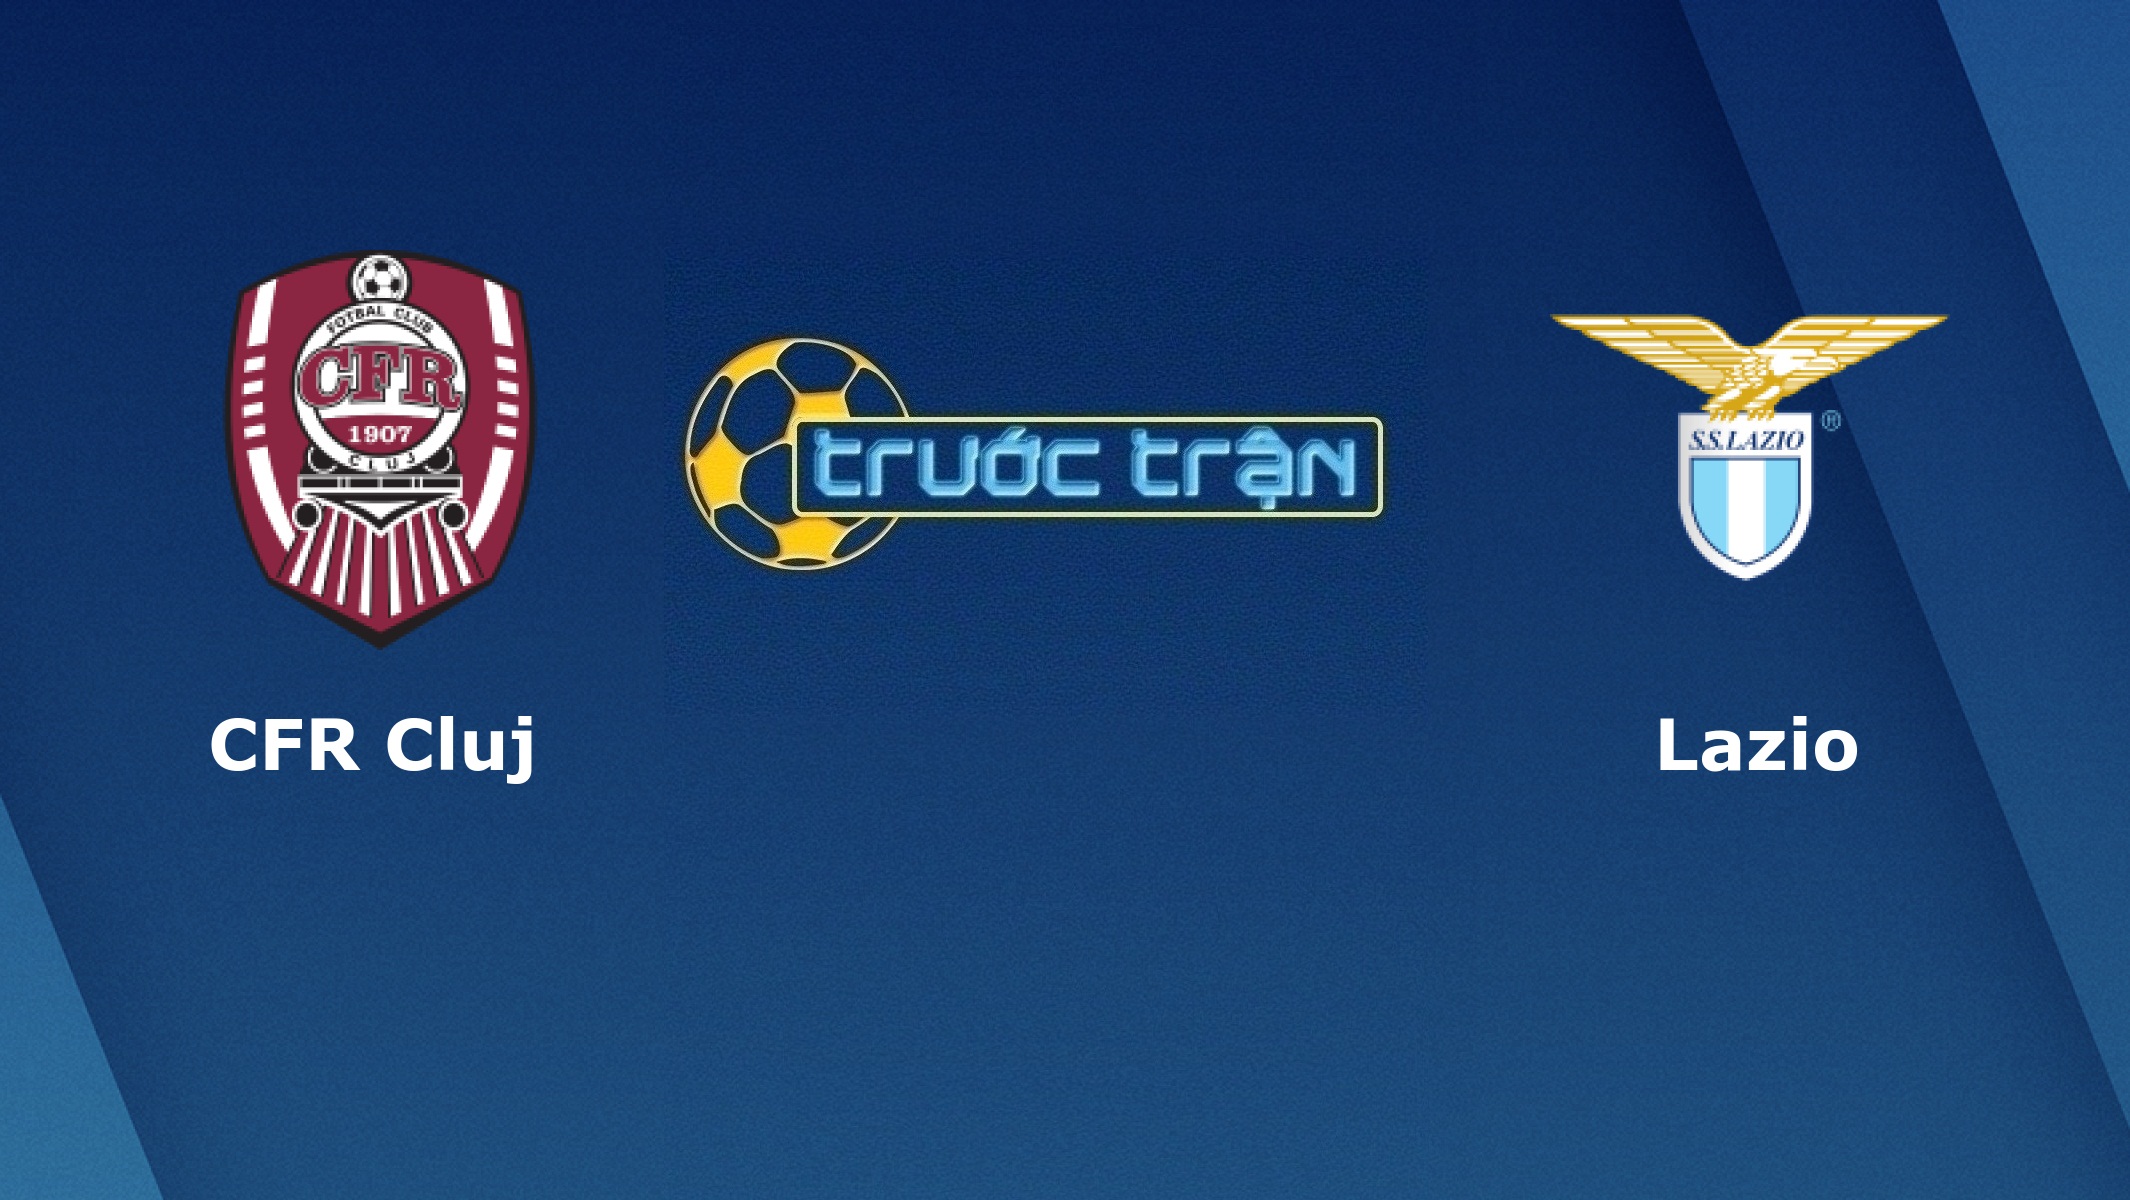 CFR Cluj vs Lazio – Tip kèo bóng đá hôm nay – 19/09